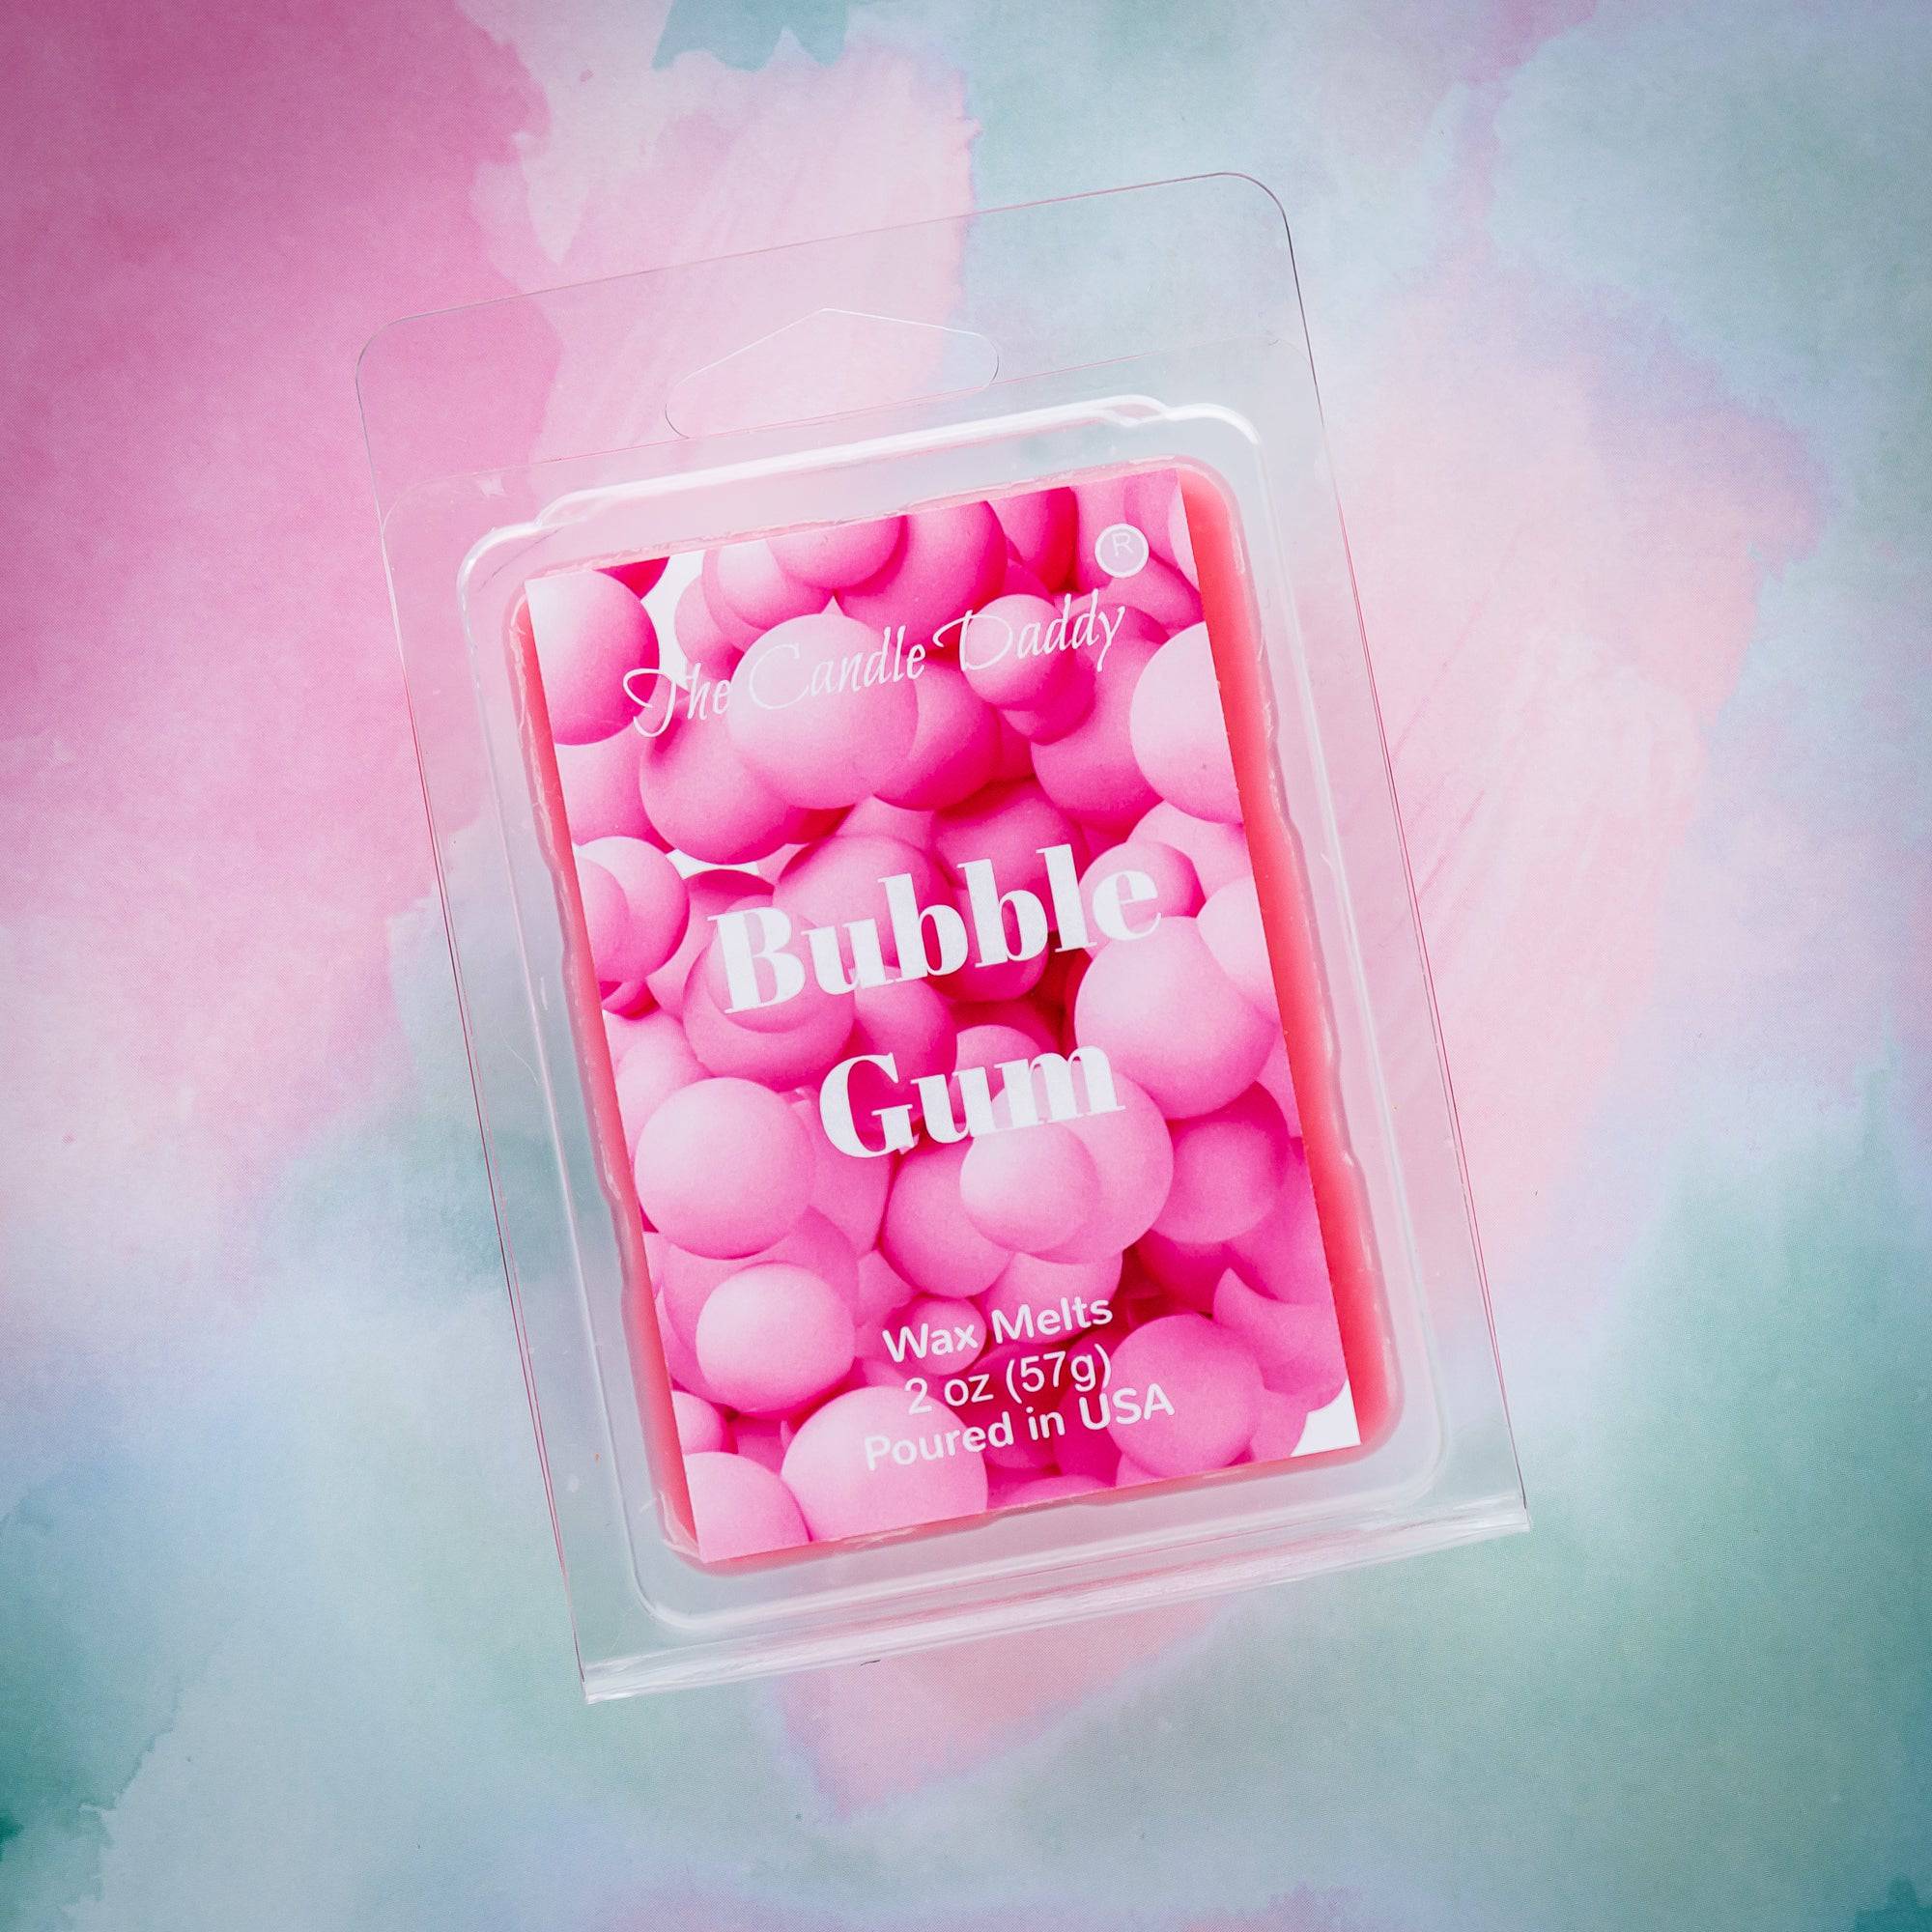 5 Pack - Bubble Gum - Pink Bubble Gum Scented Melt- Maximum Scent Wax Cubes/ Melts - 2 Ounces x 5 Packs = 10 Ounces